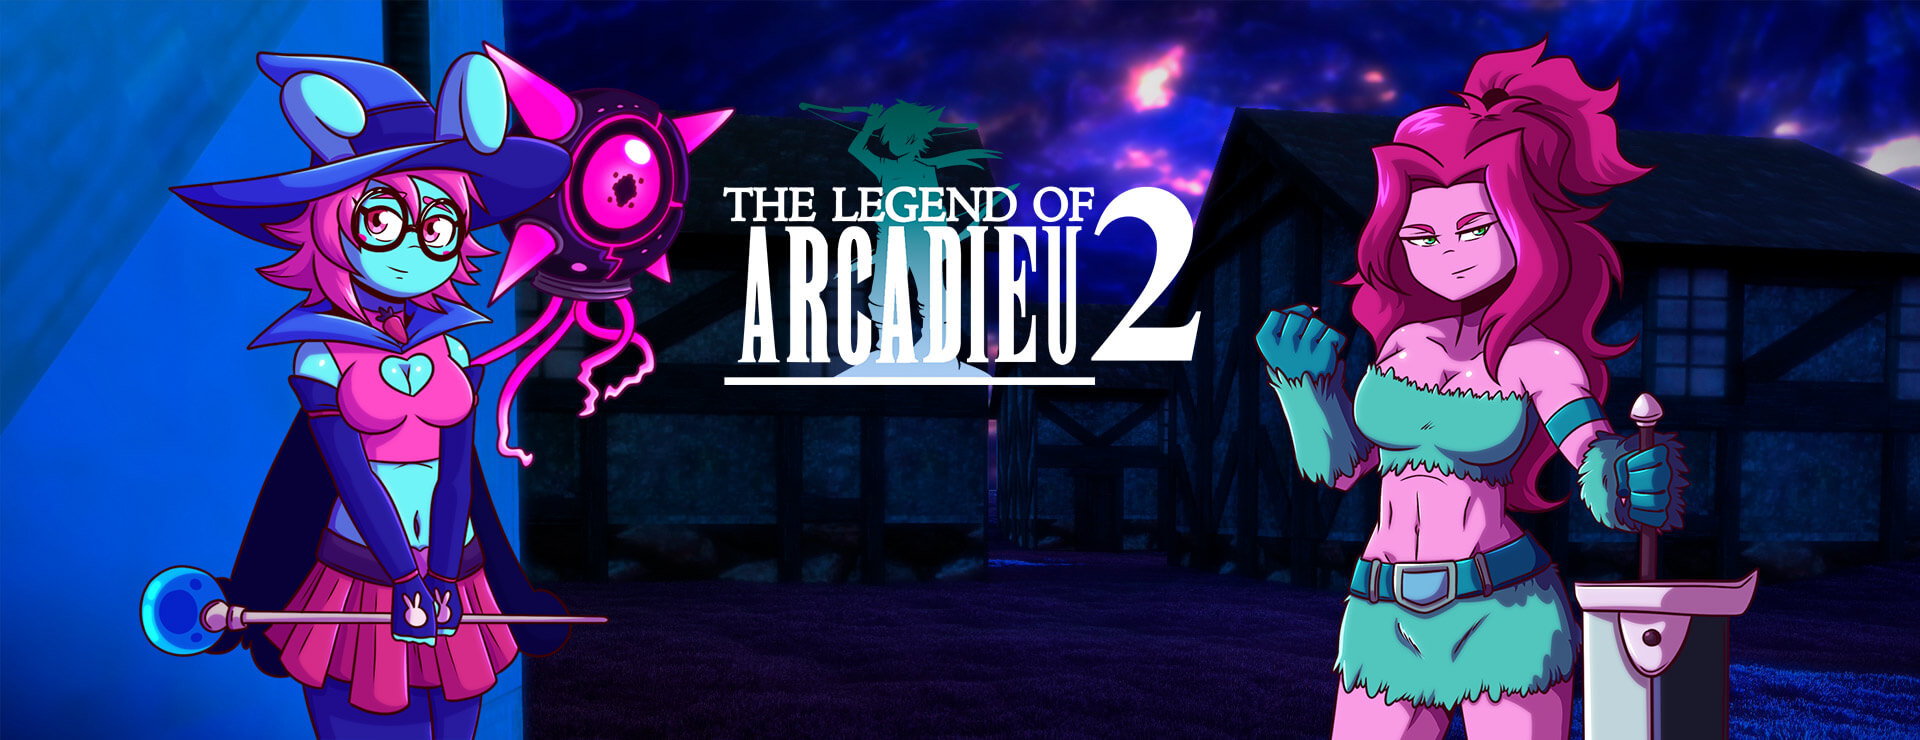 The Legend of Arcadieu 2 - RPG Gra